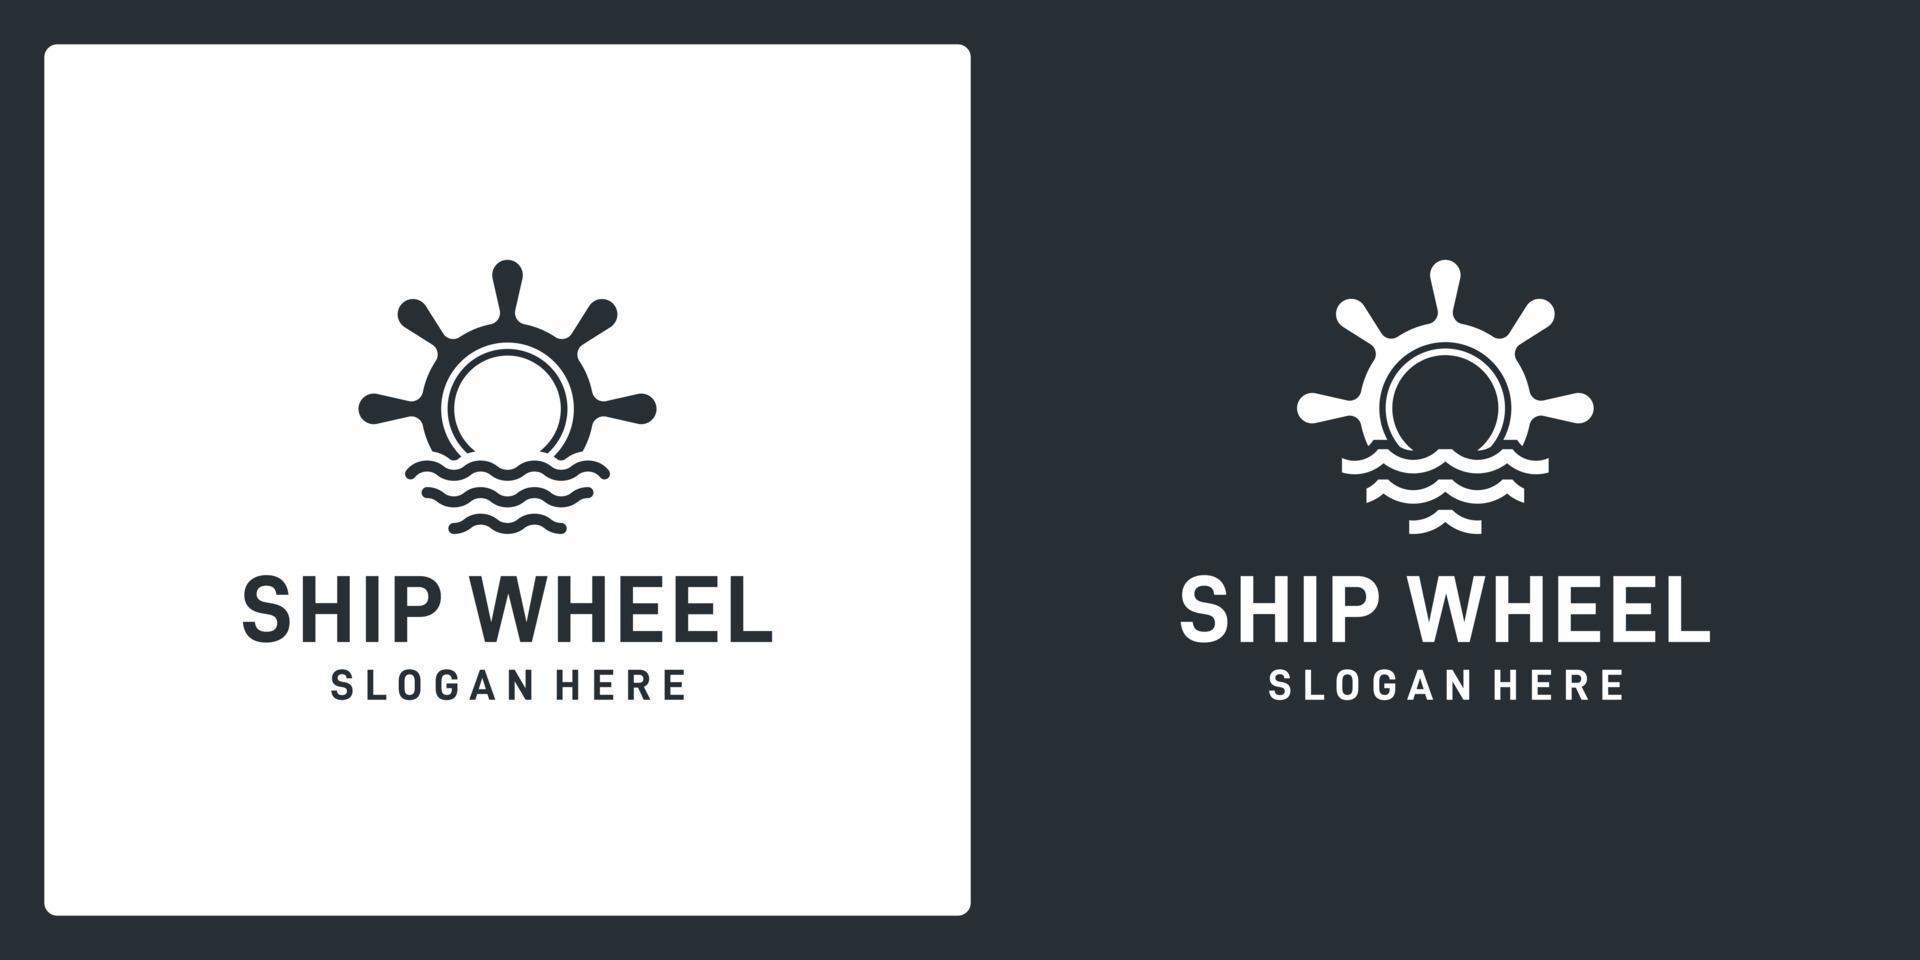 inspiración del volante de barcos y barcos con forma de olas del mar. vector premium